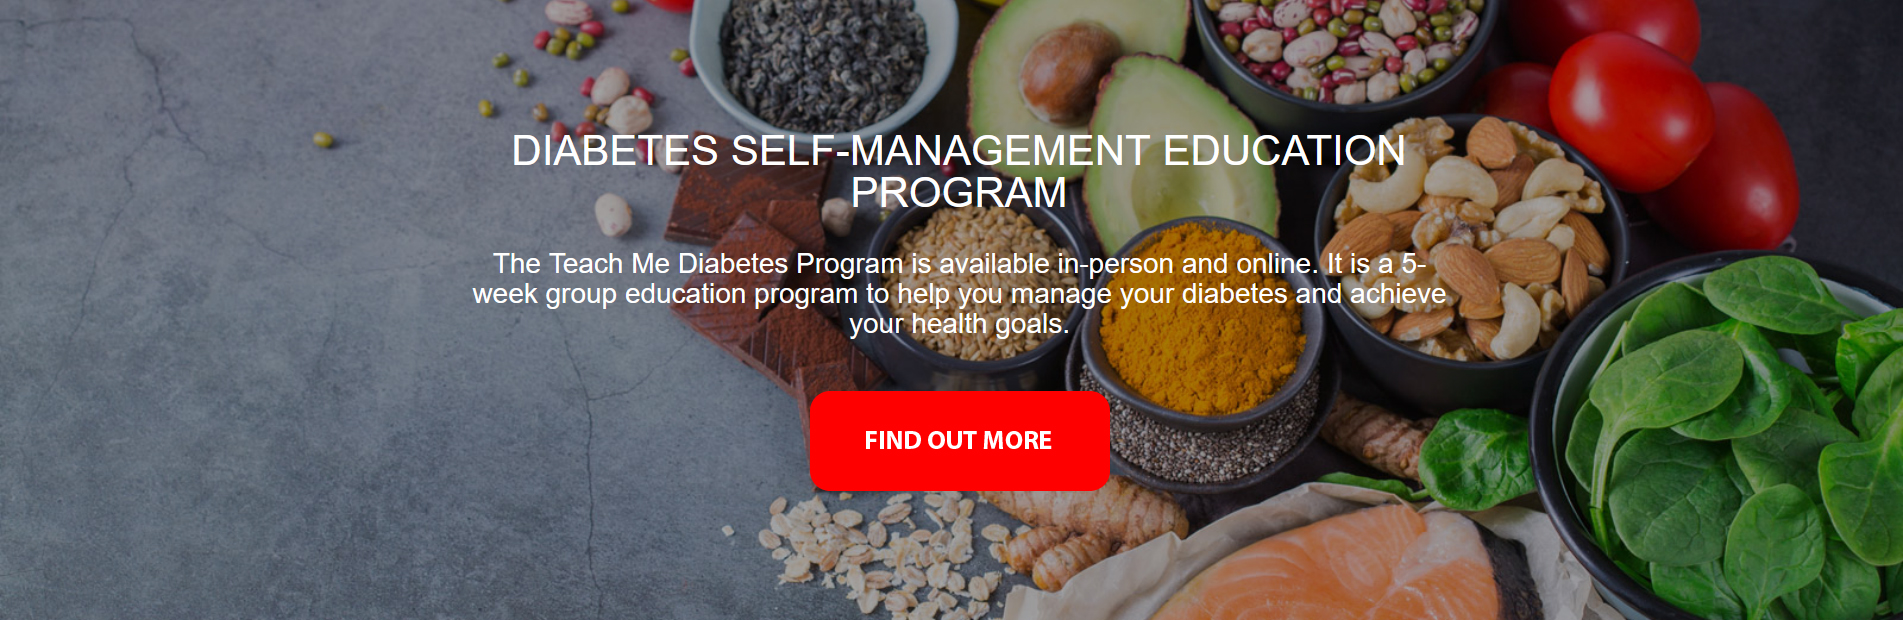 Diabetes Self-Management Education Program